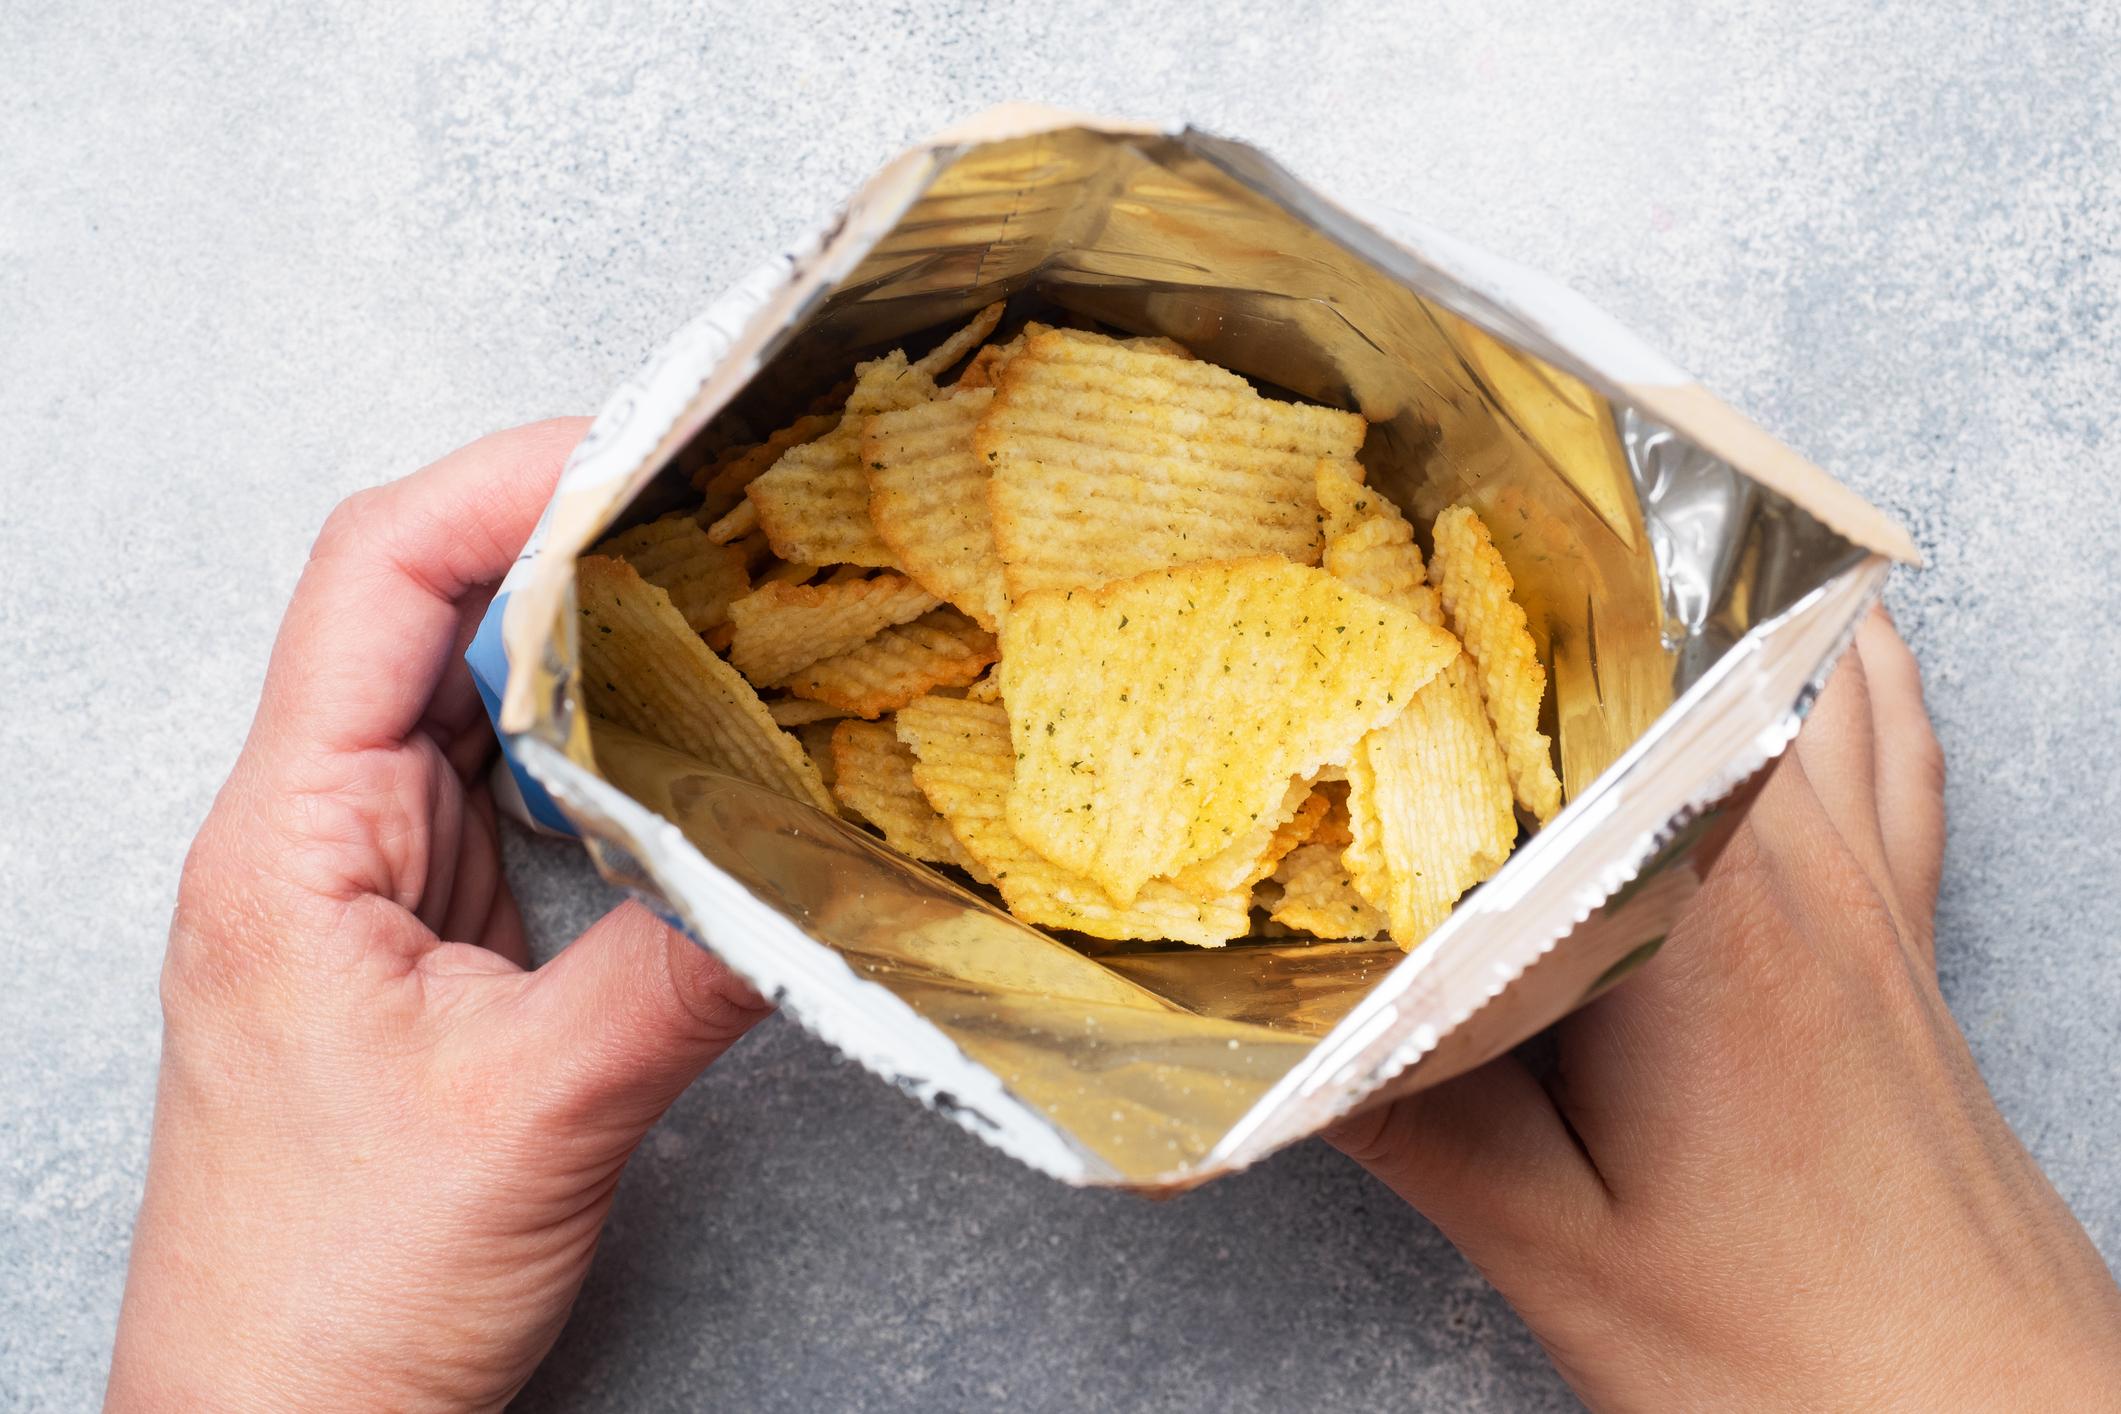 Lay's sort 3 nouveaux paquets de chips ultra piquantes